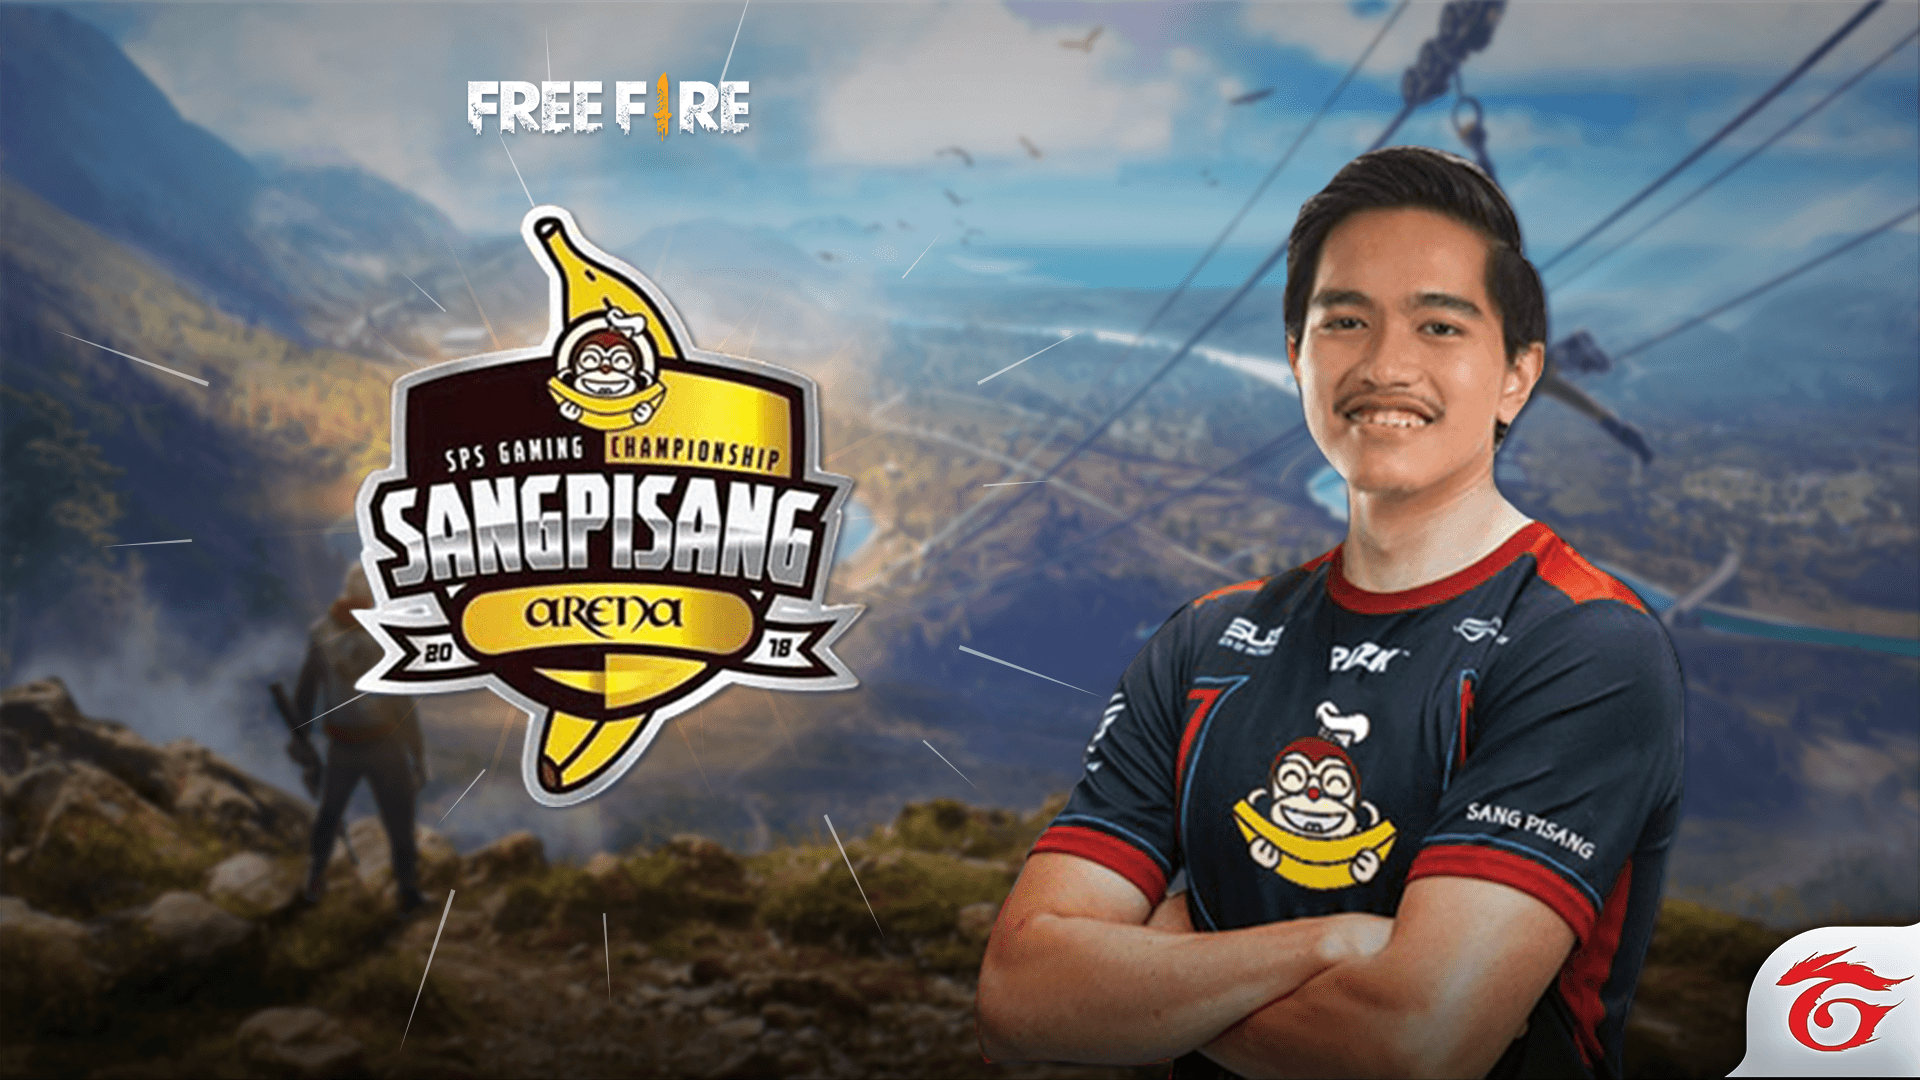 Free Fire Dipertandingkan dalam Sang Pisang Gaming Championship 2018 by Kaesang Pangarep